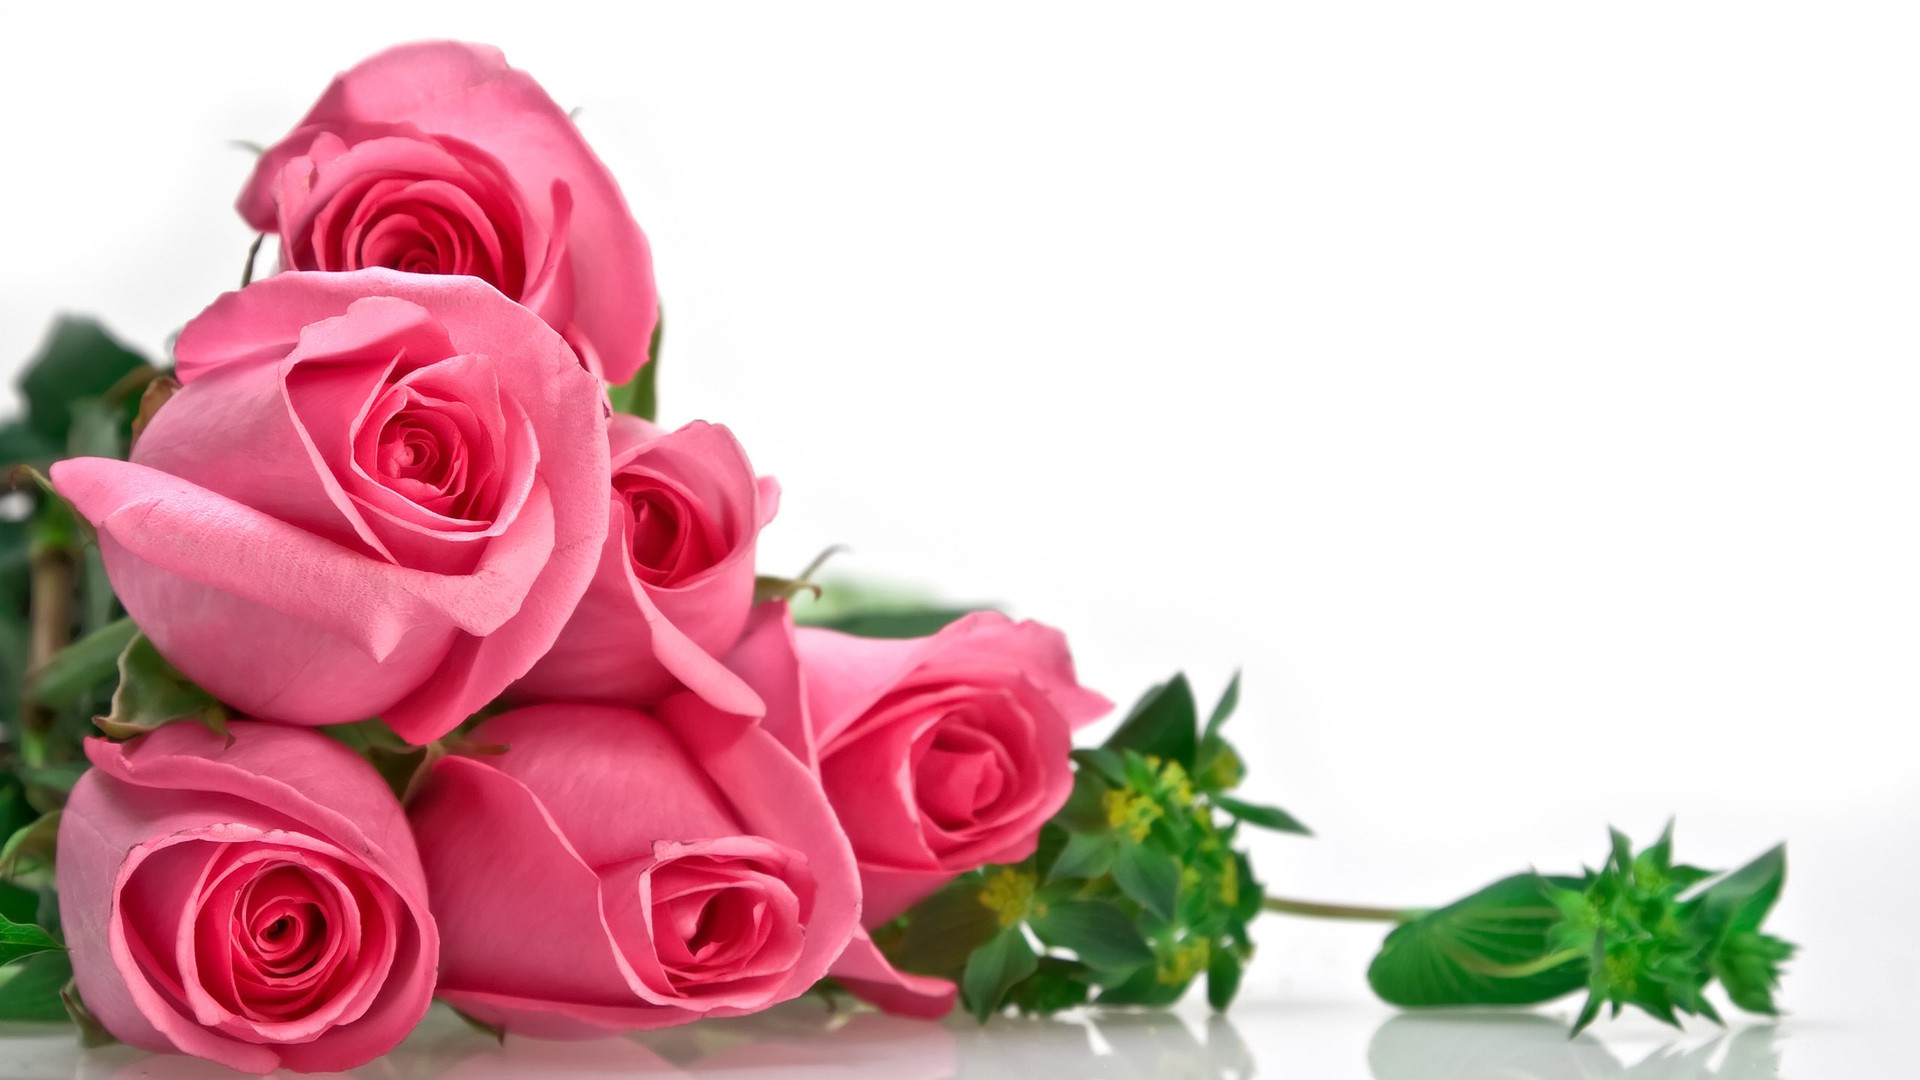 Hoa hồng là món quà tình yêu mãnh liệt nồng cháy